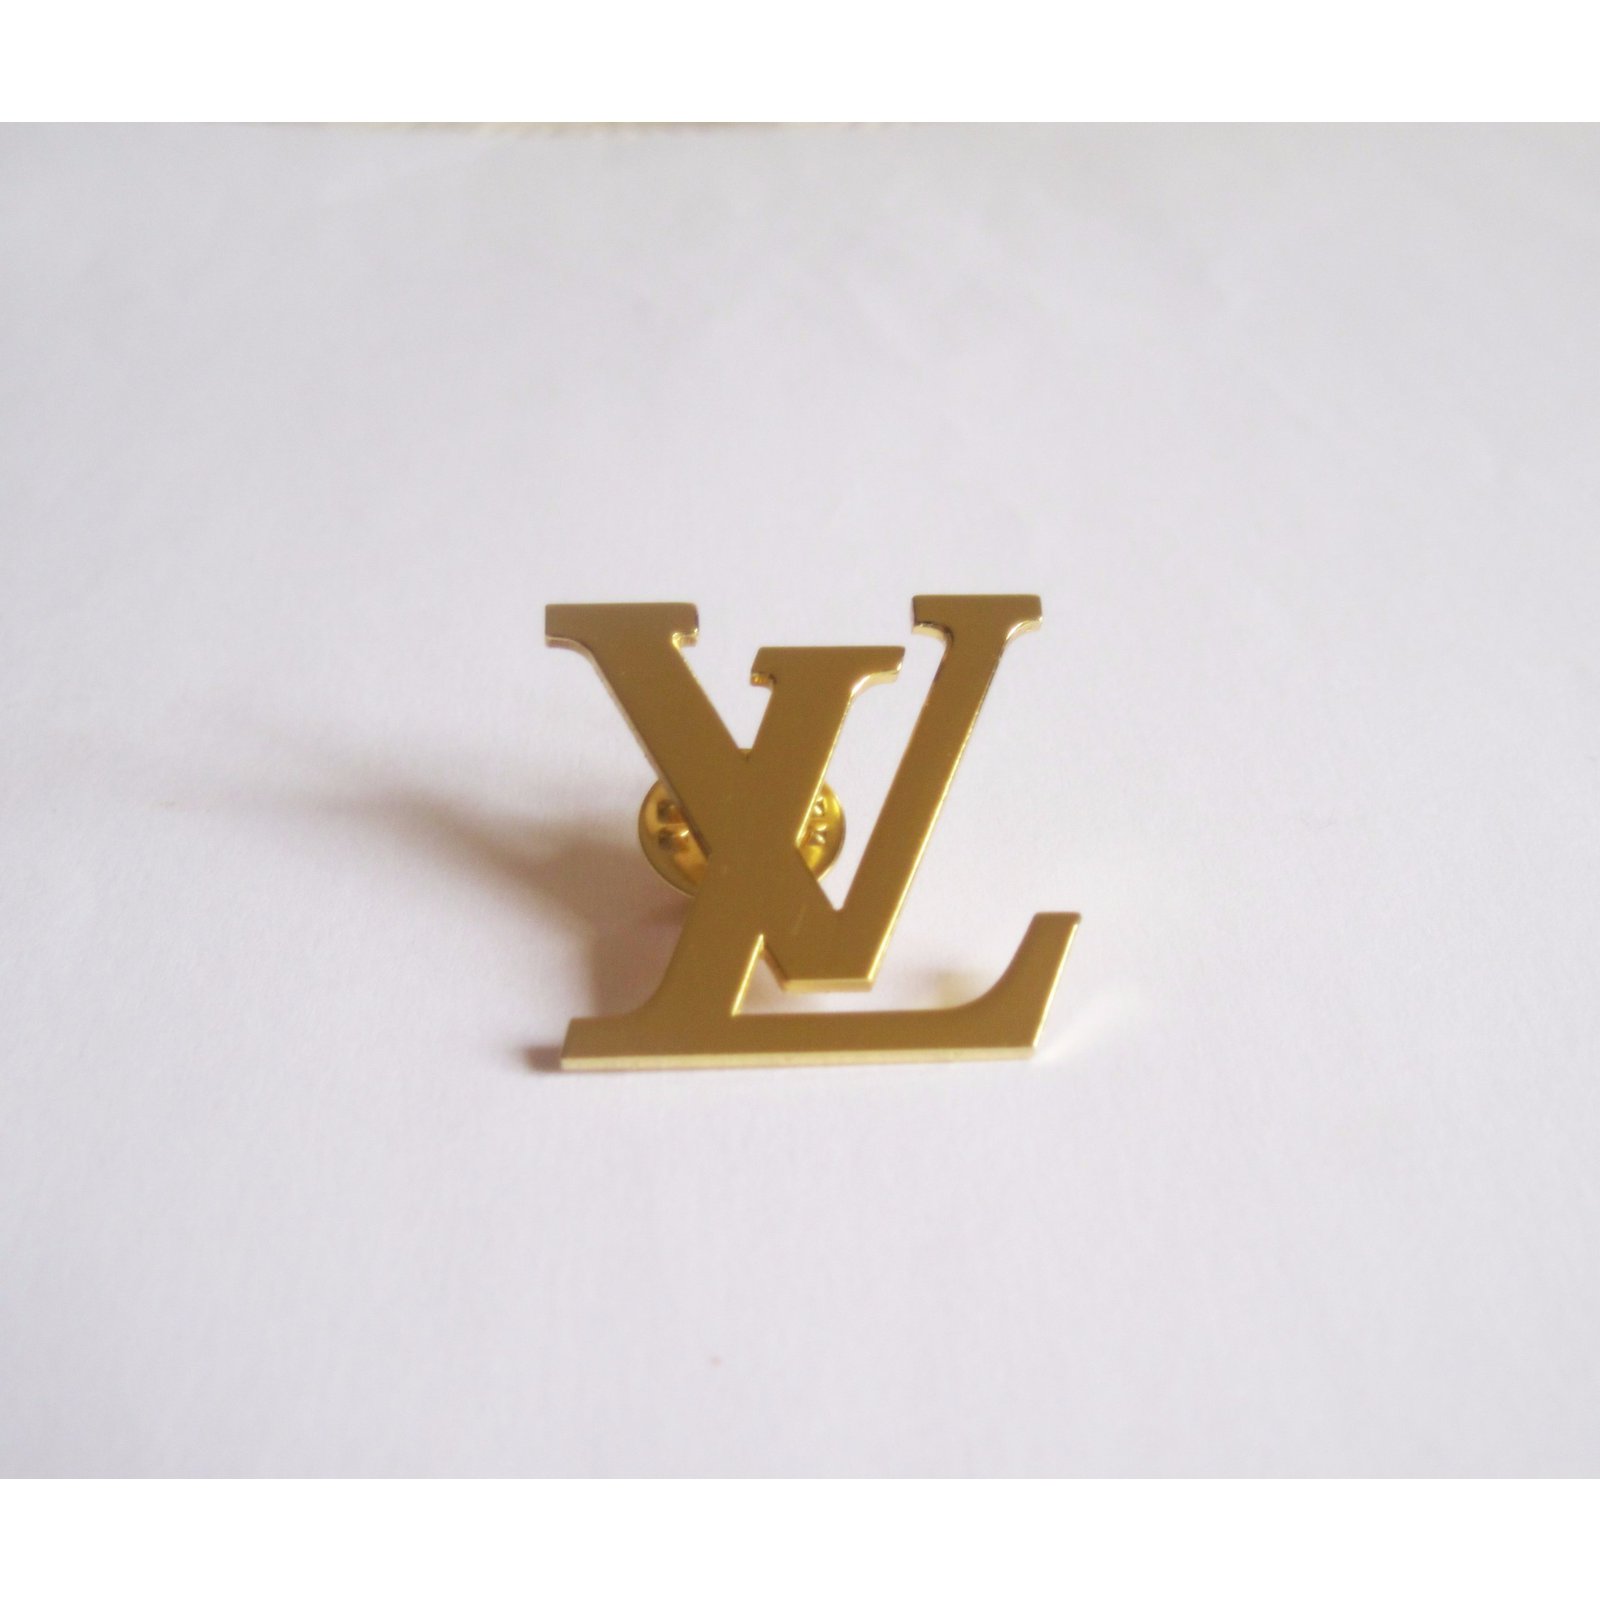 PotencyDiv — Louis Vuitton Brooch Lapel Pin